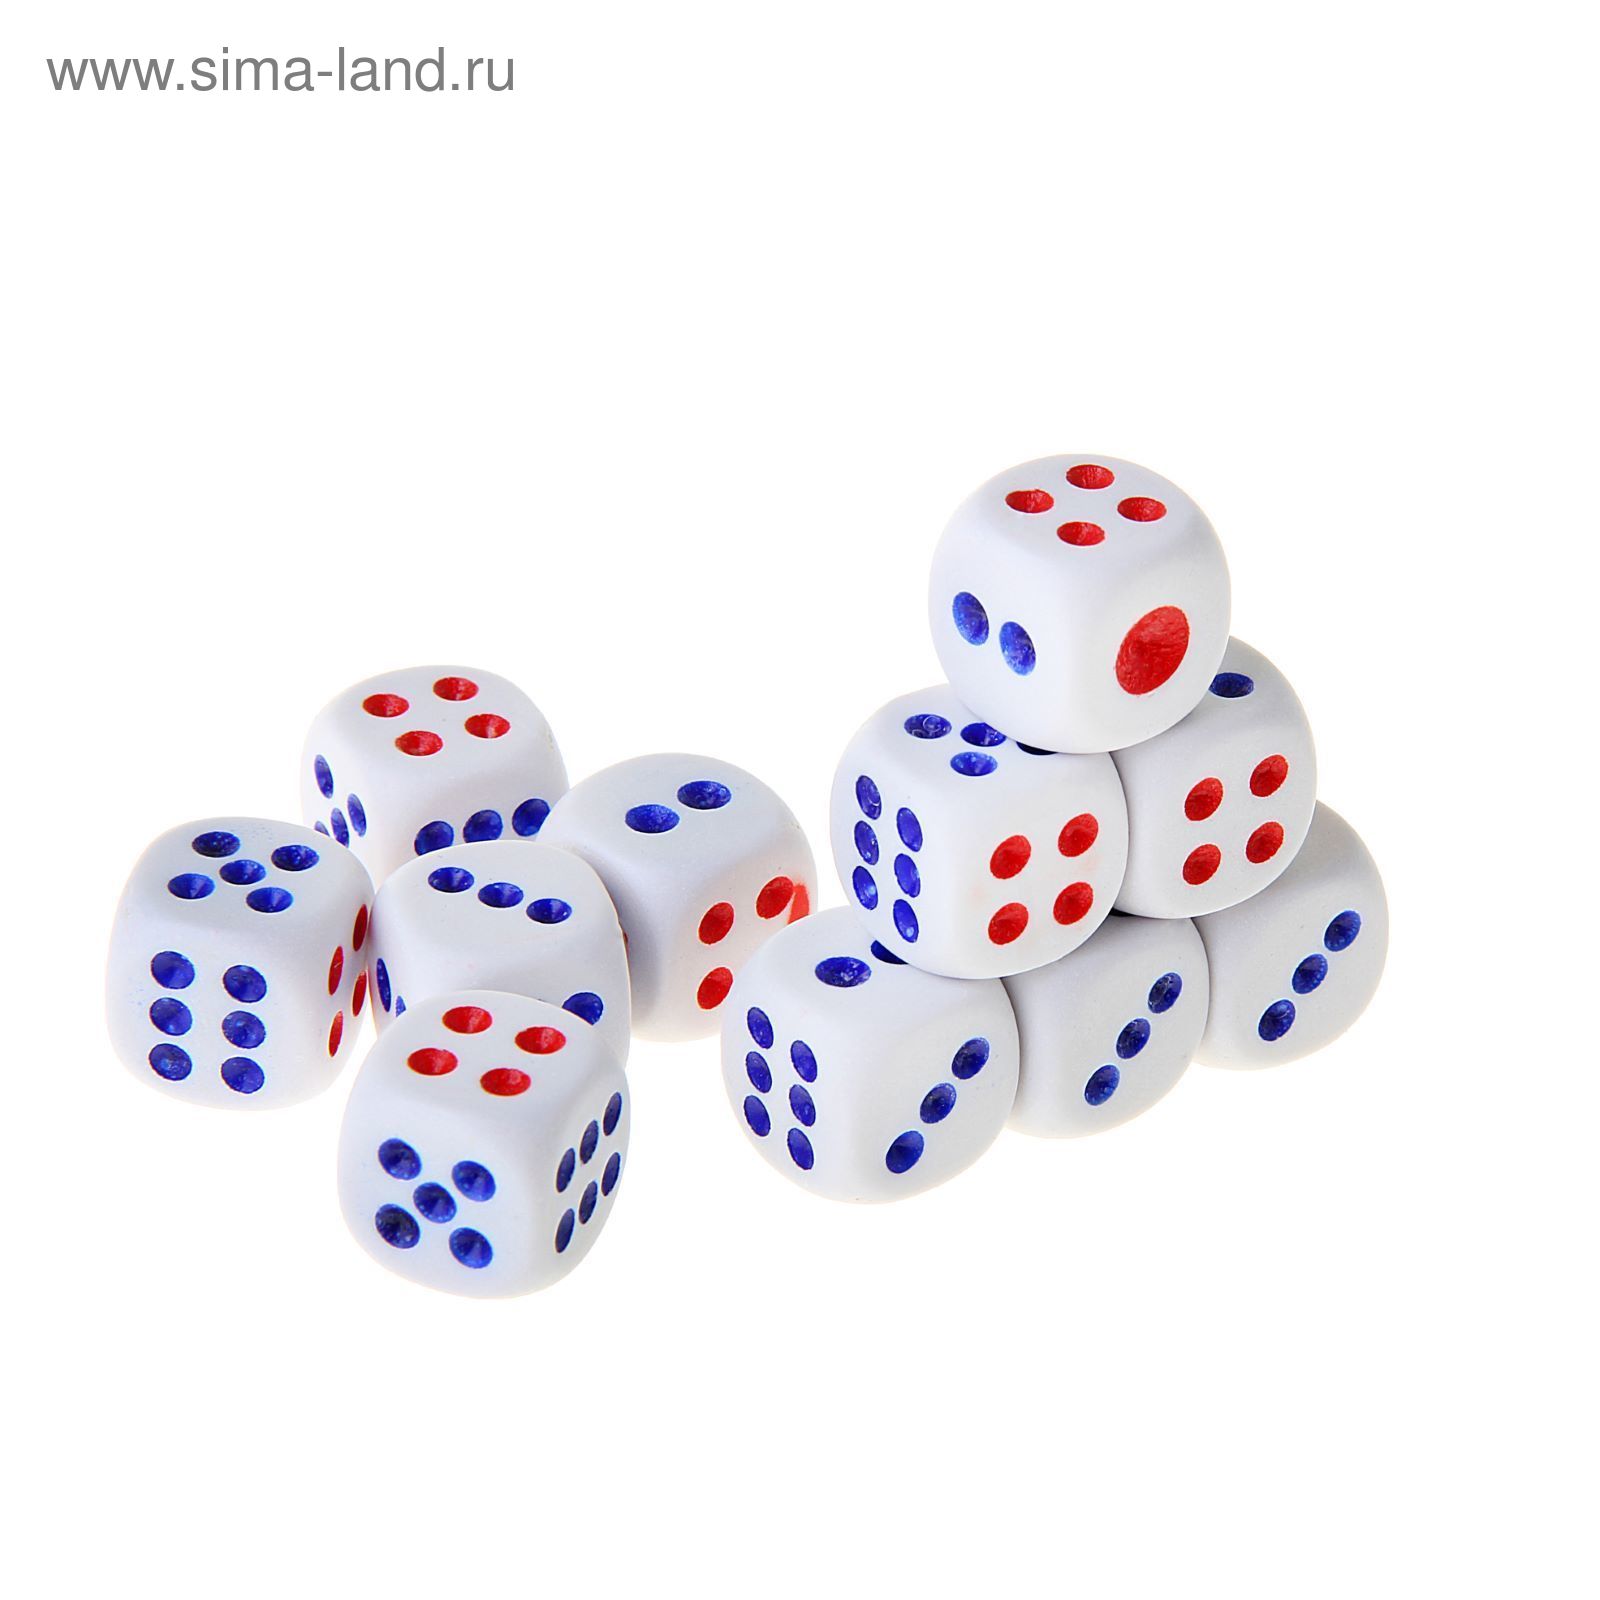 Кости игральные 1,5 × 1,5 см, белые с красными и синими точками, фасовка 100 шт.